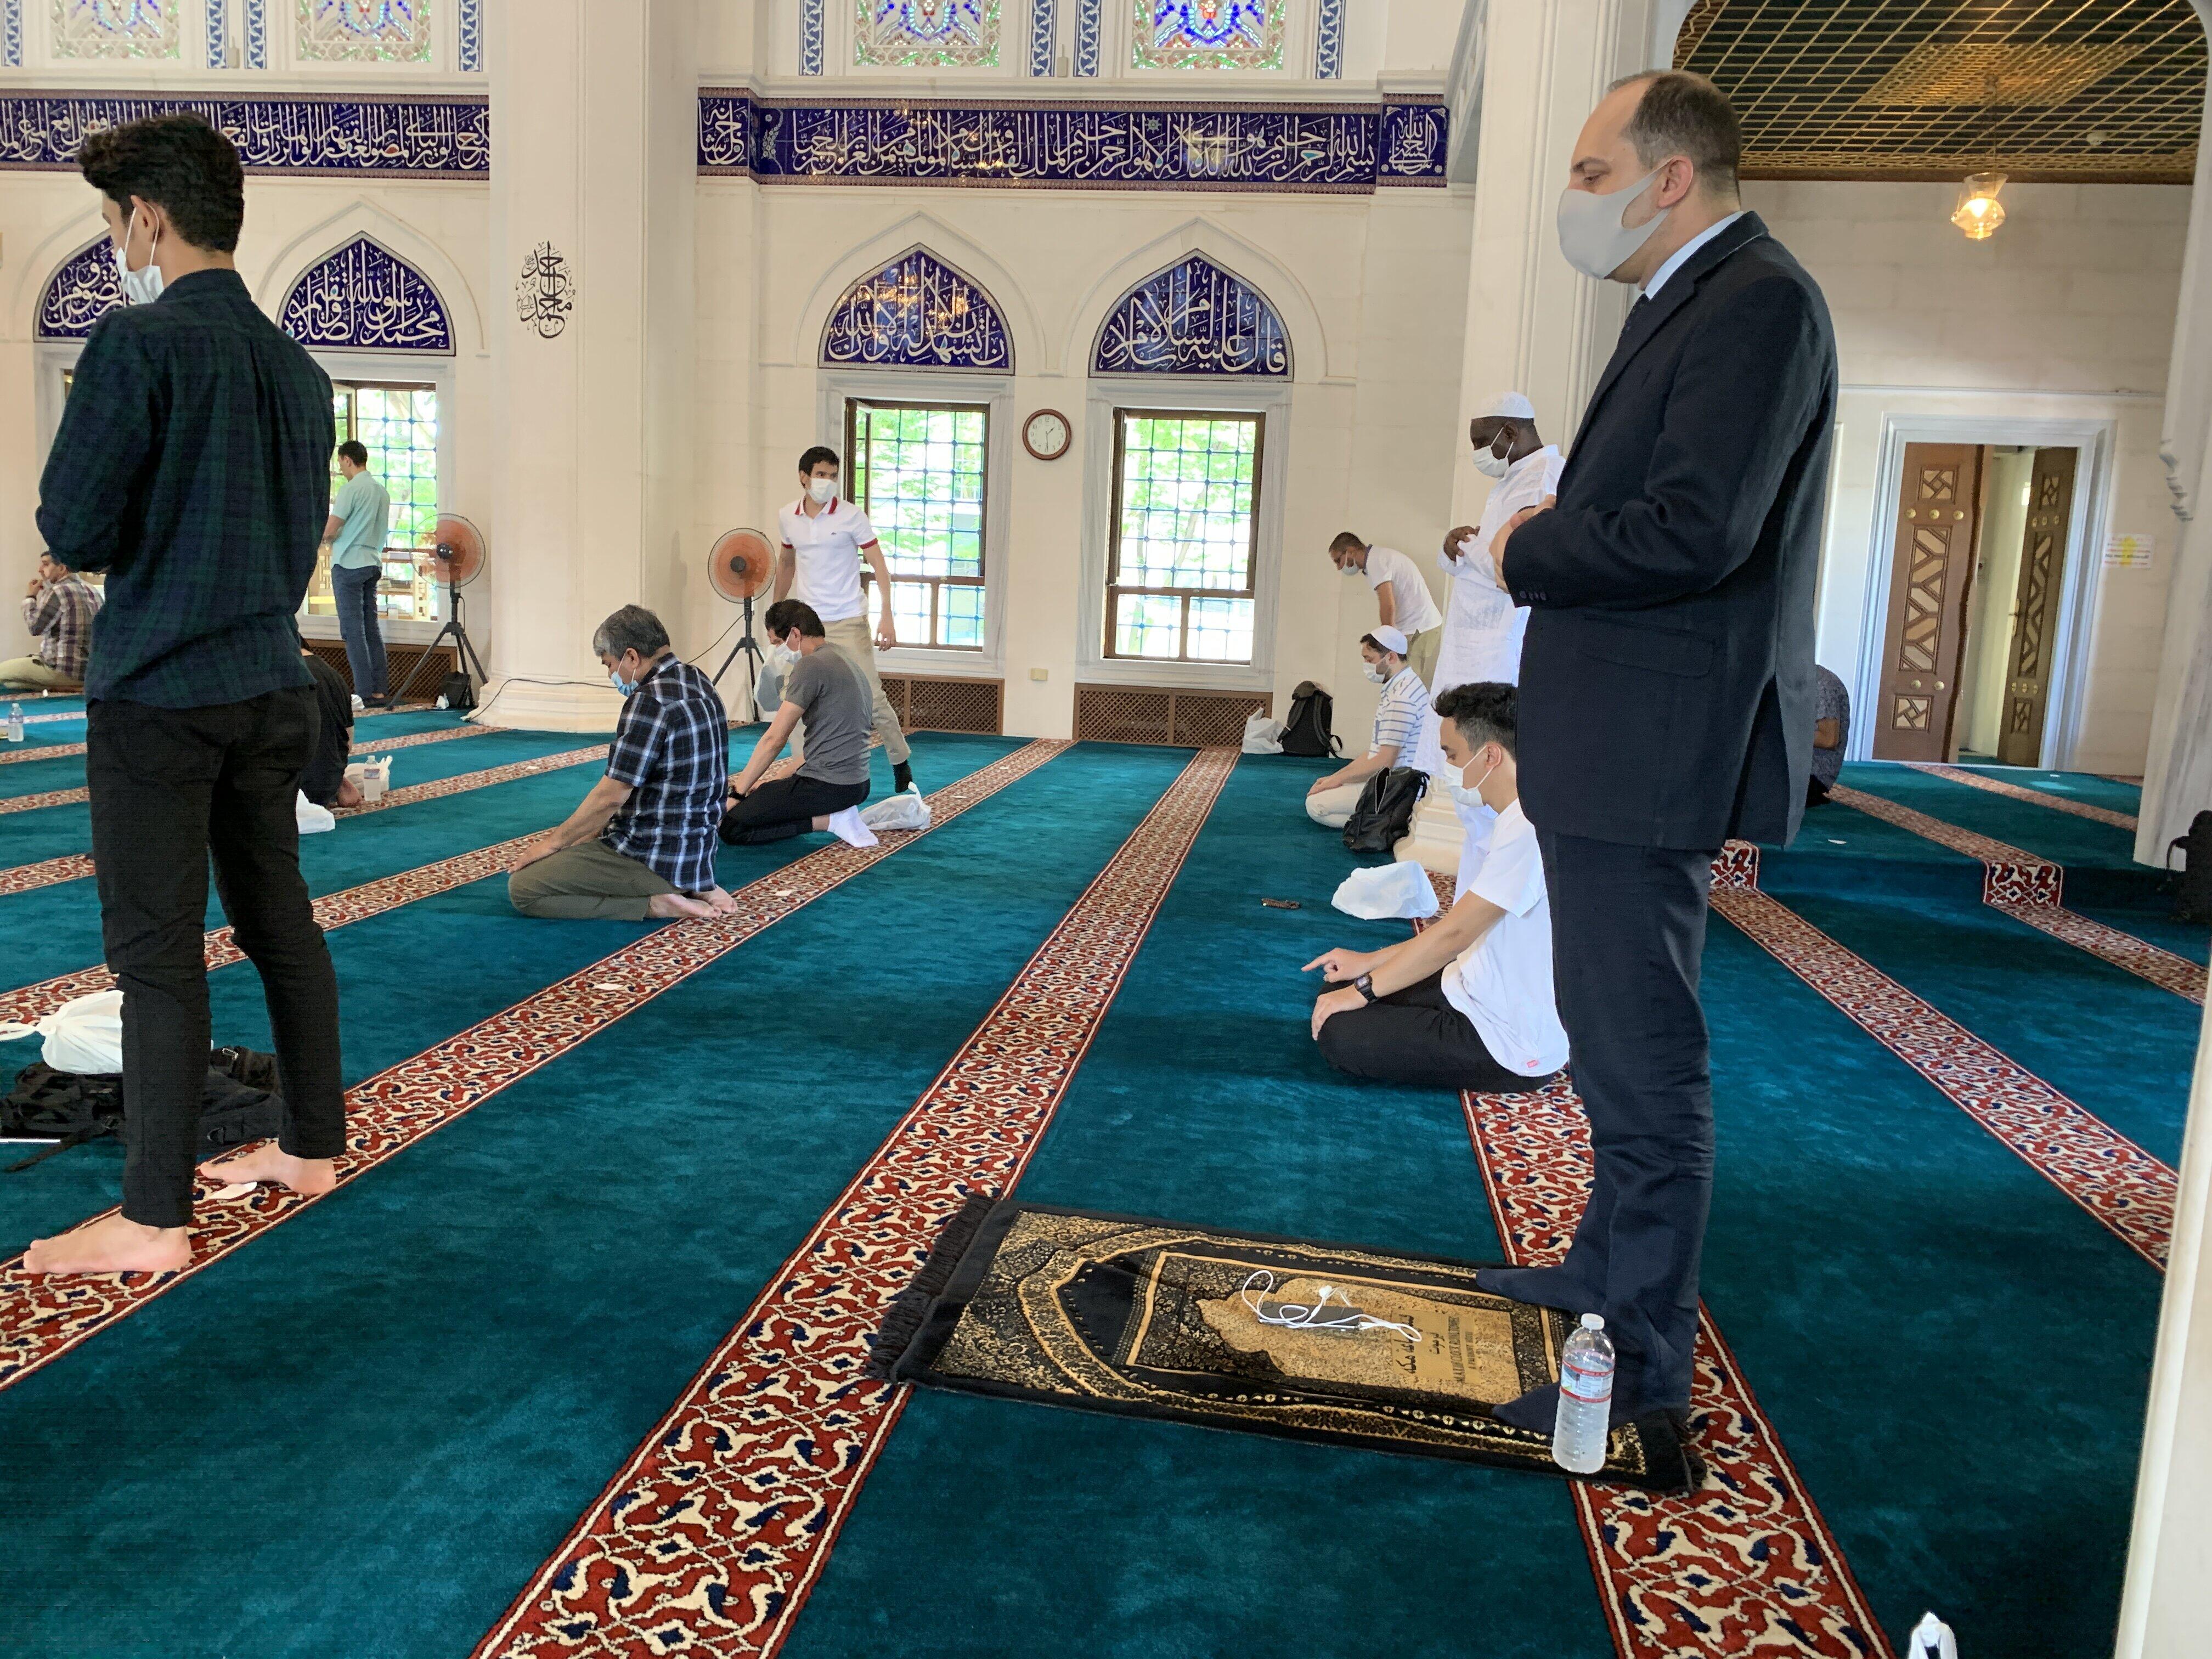 モスクの中では距離を置いて集団礼拝に立つ。